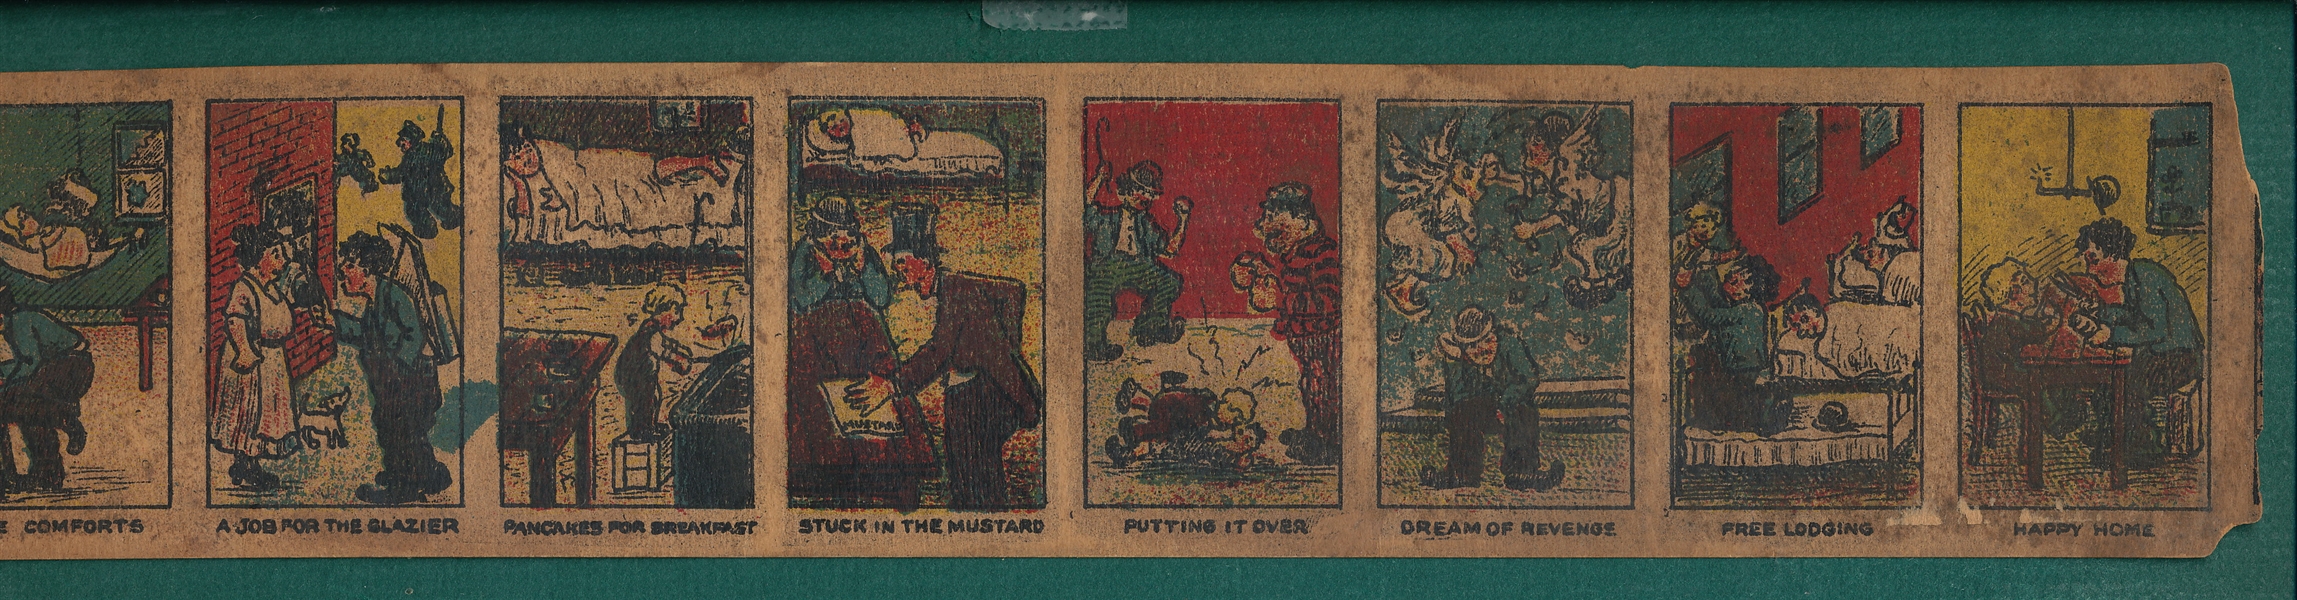 1921 Charlie Chaplin, Universal Toys Nov Mfg. Co., Strip of (10) Cards